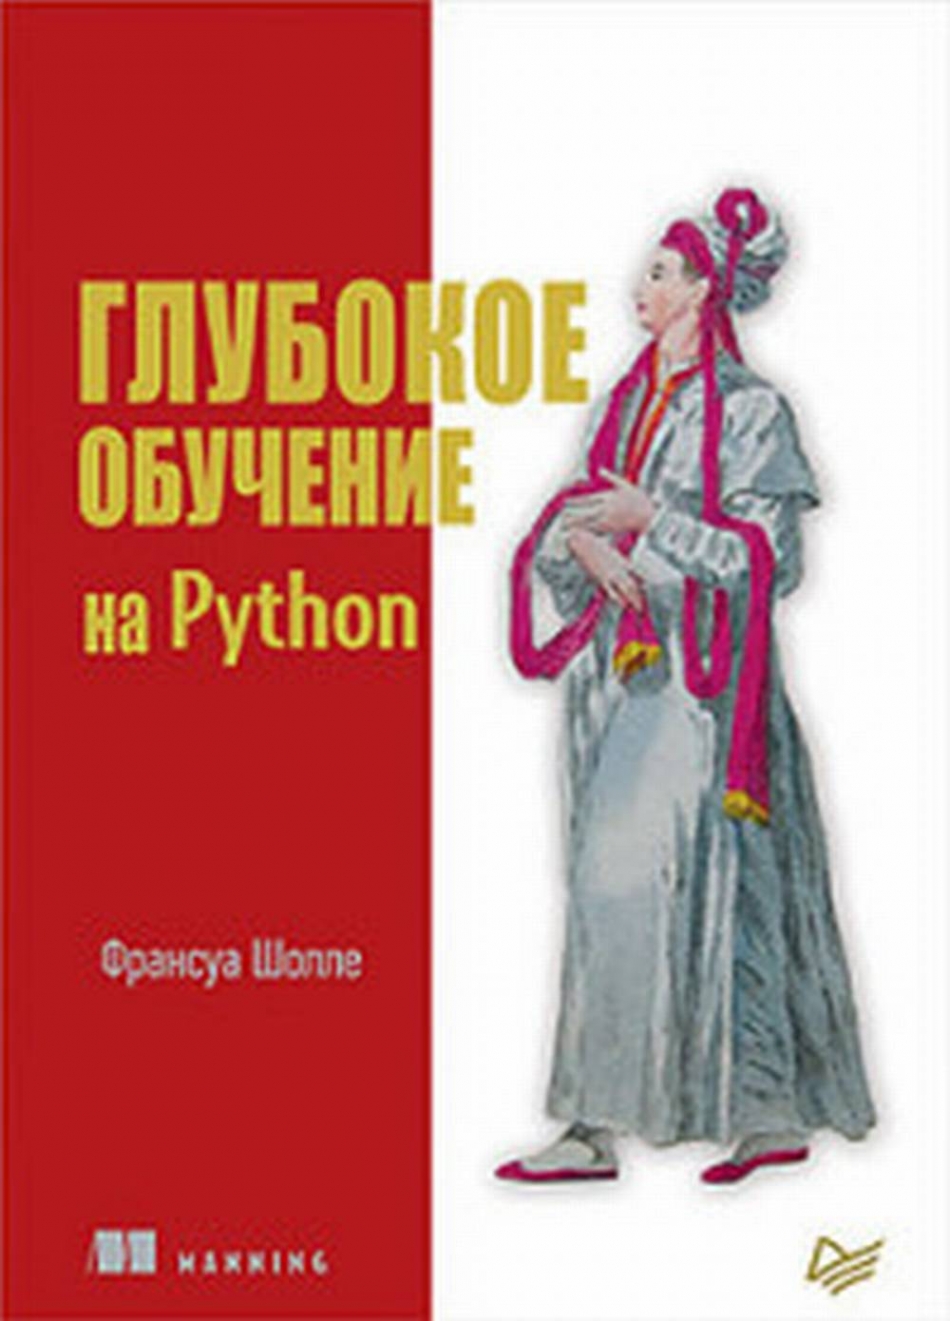 Шолле Ф. - Глубокое обучение на Python 